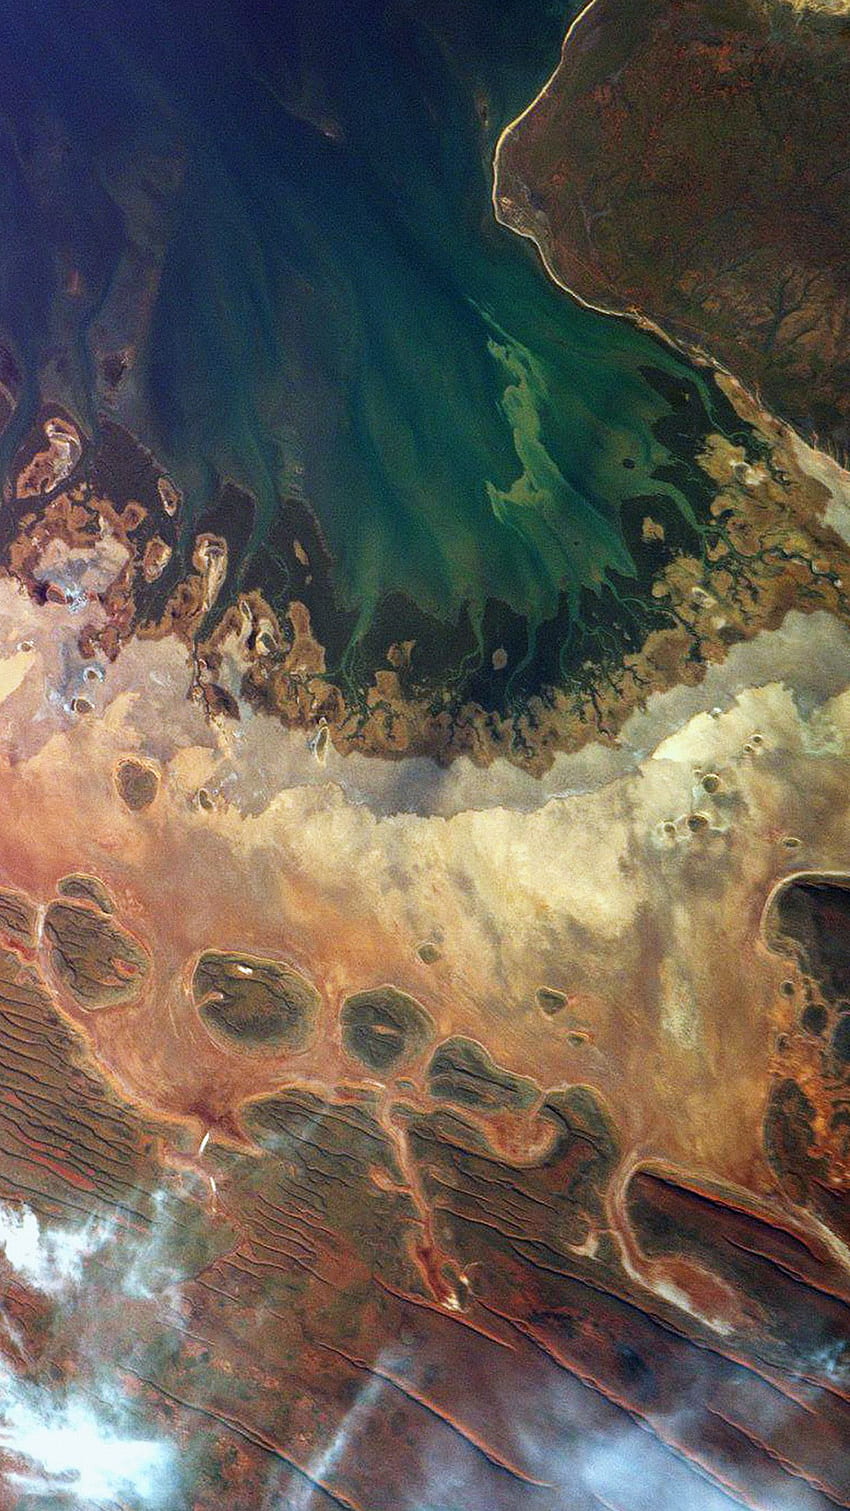 iPhone11 . earthview peta satelit ilustrasi seni tanah laut merah, Peta Abstrak wallpaper ponsel HD